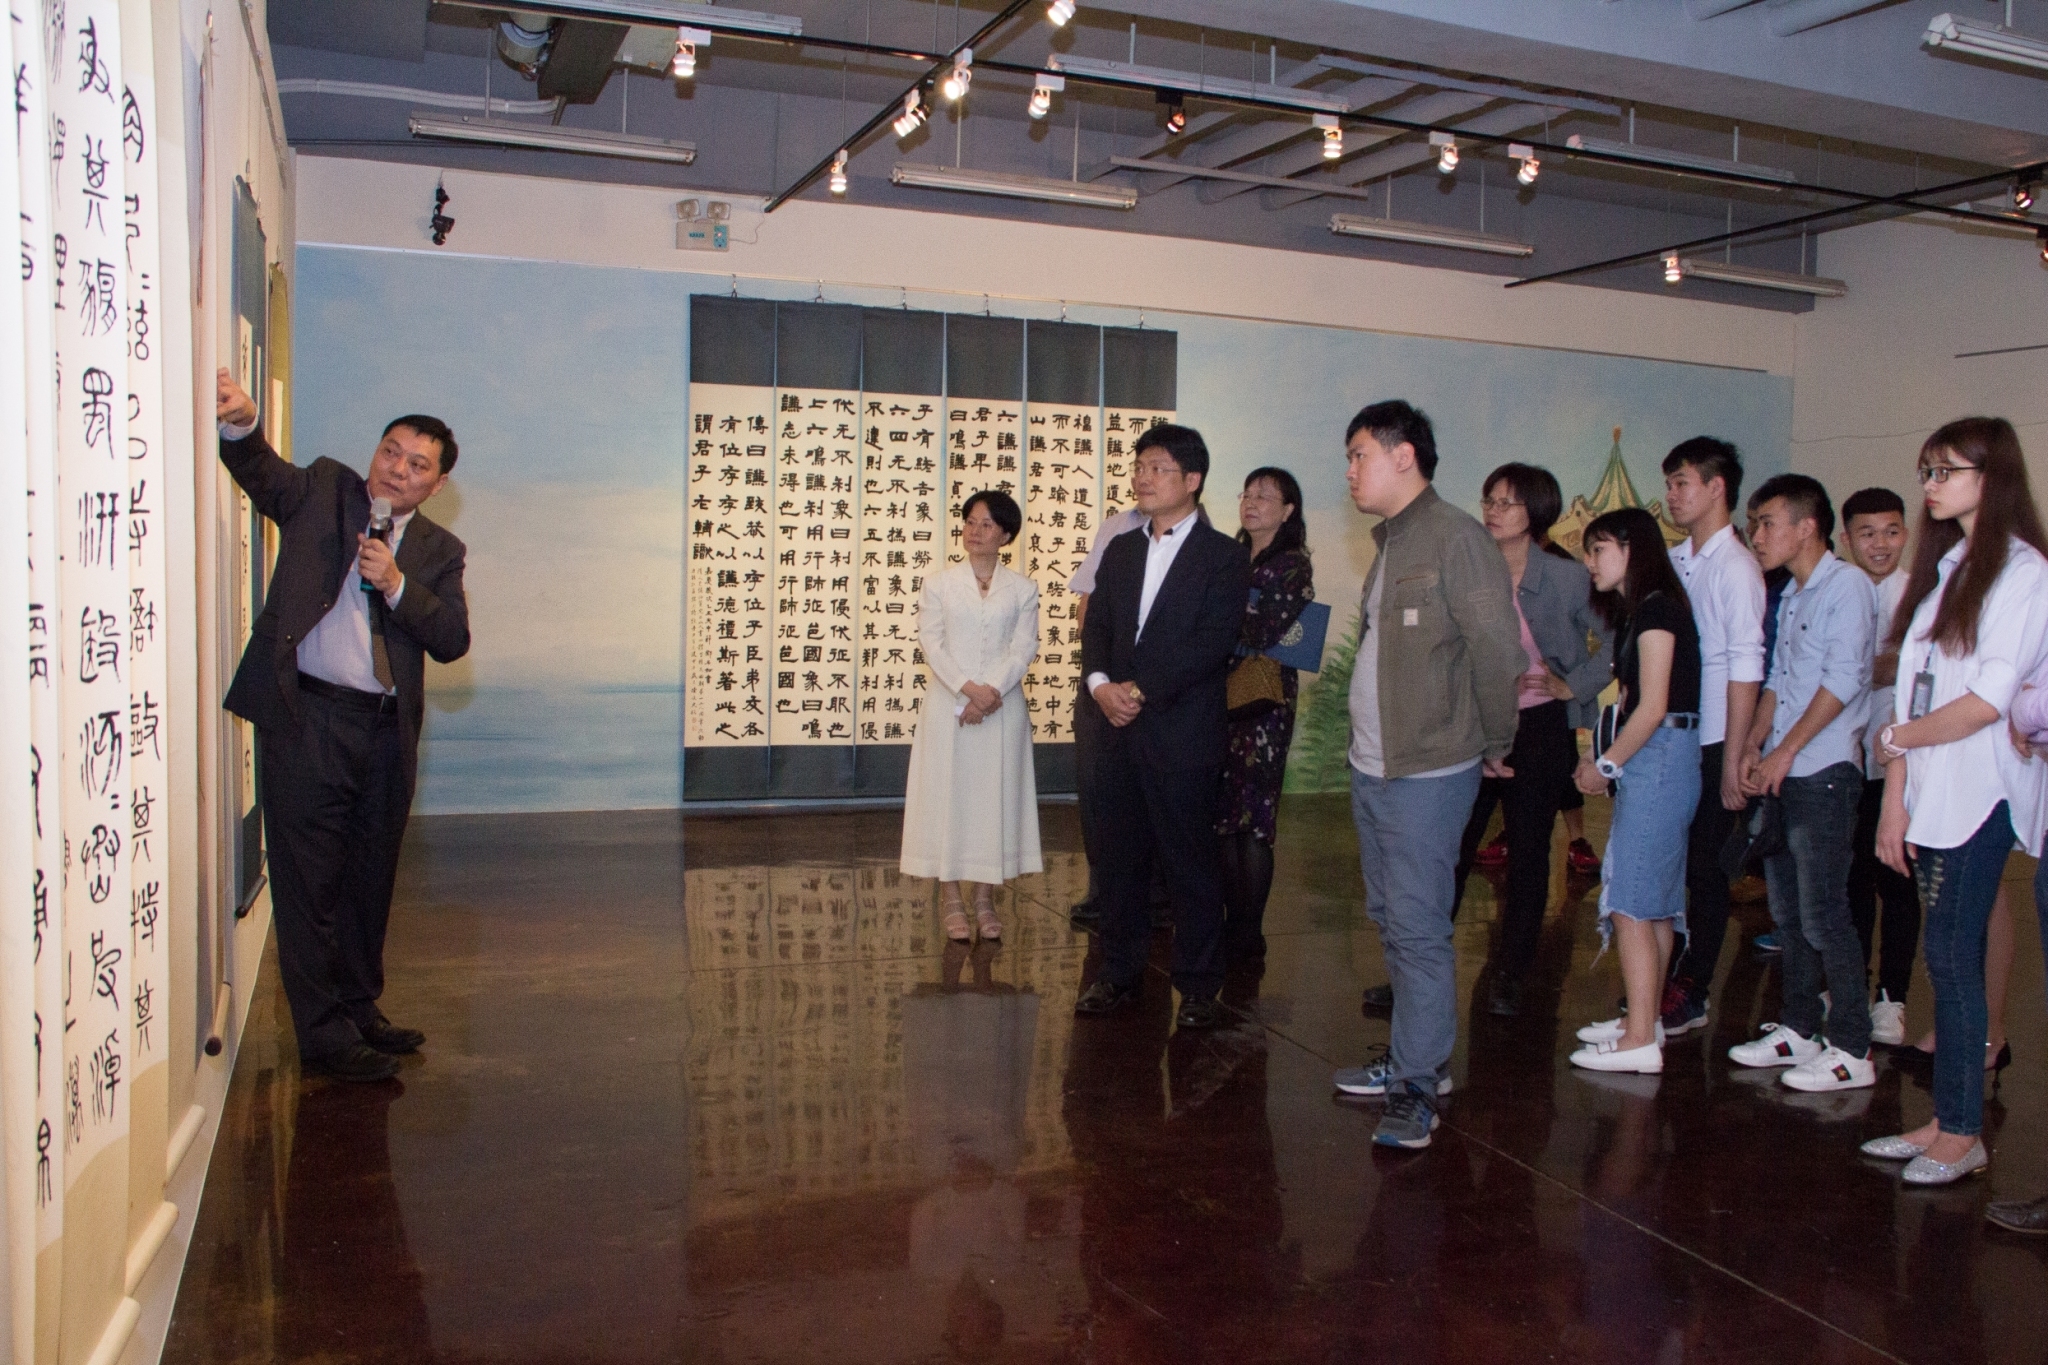 陳俊光藝術家親自進行作品導覽，透過作者解說，讓現場師生對作品欣賞有更深層的認識與體會